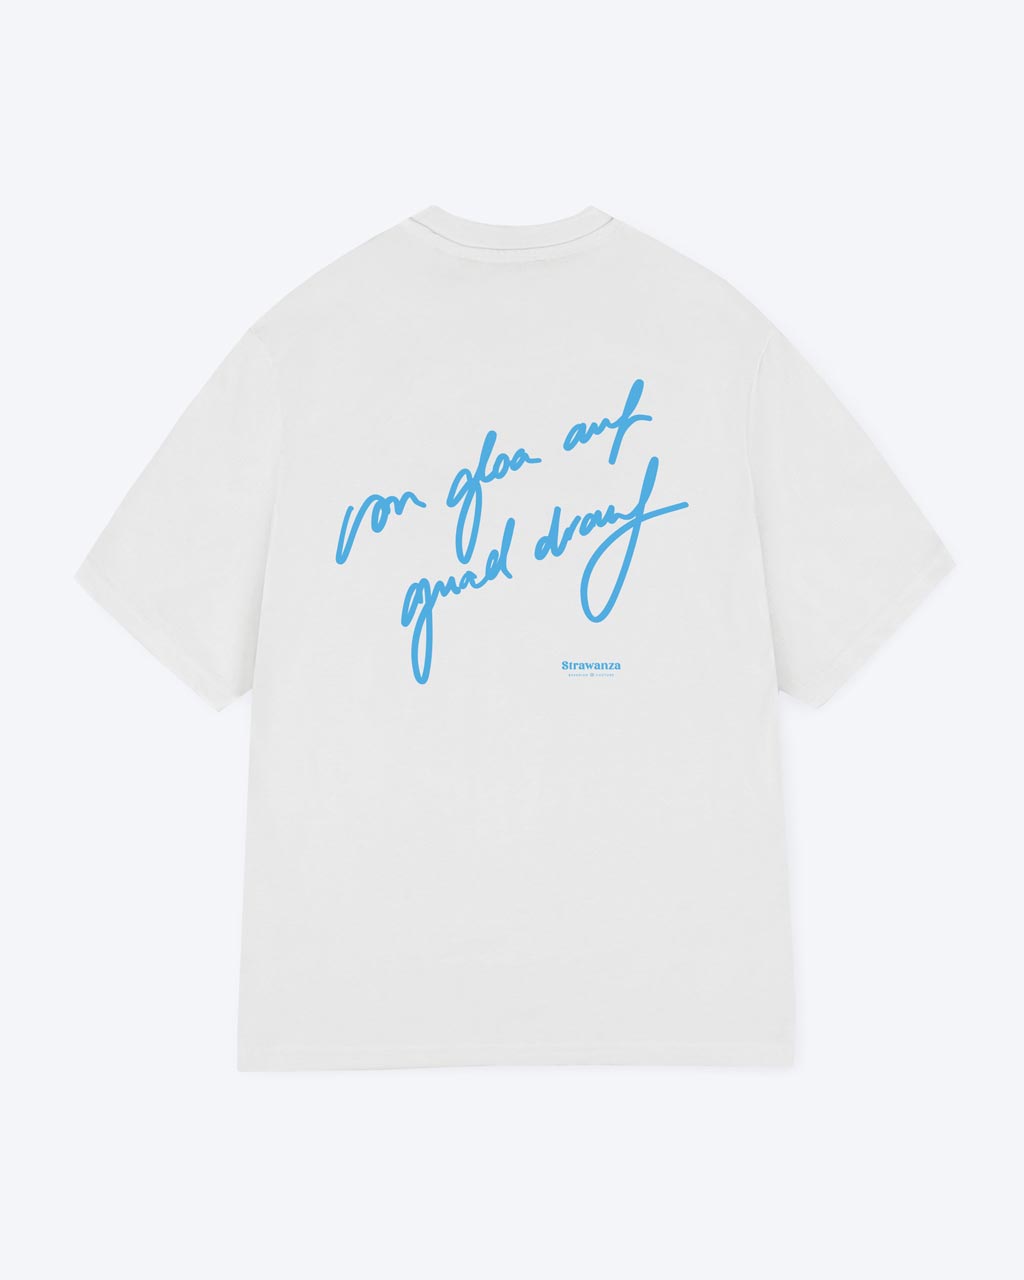 Ein weißes T-Shirt mit einem hellblauen "von gloa auf guad drauf" Schriftzug als Backprint. 